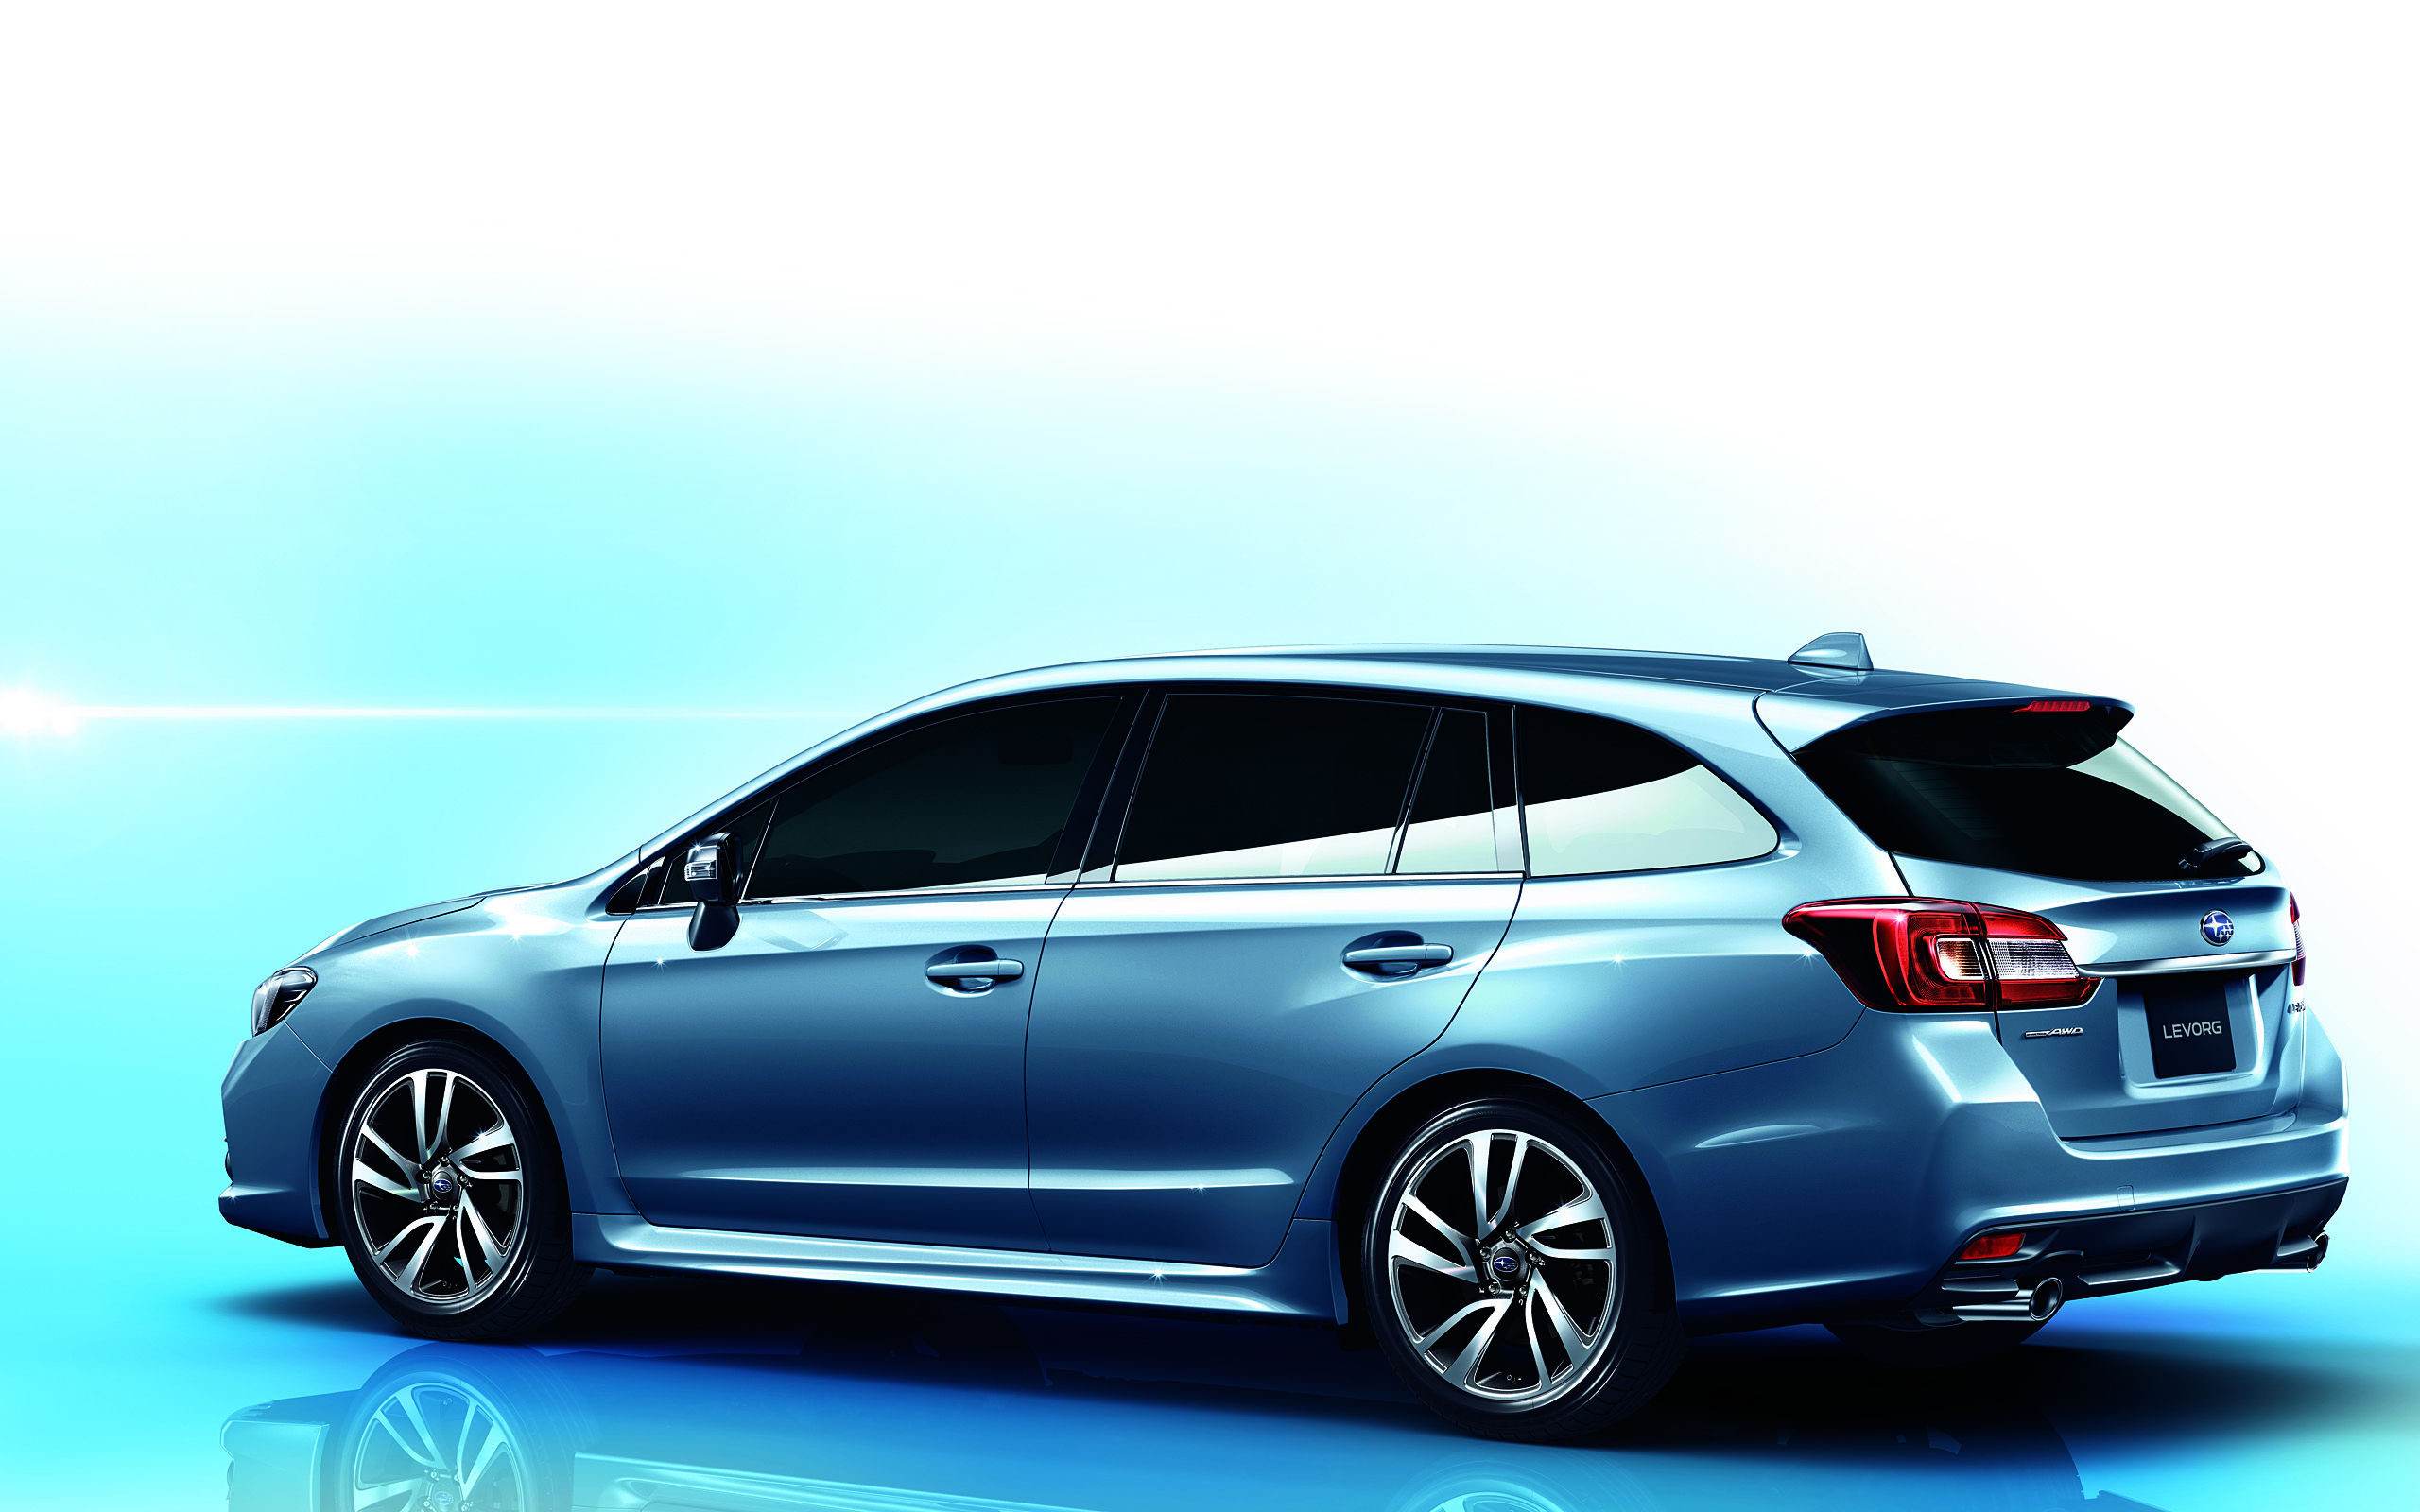  2013 Subaru Levorg Concept Wallpaper.